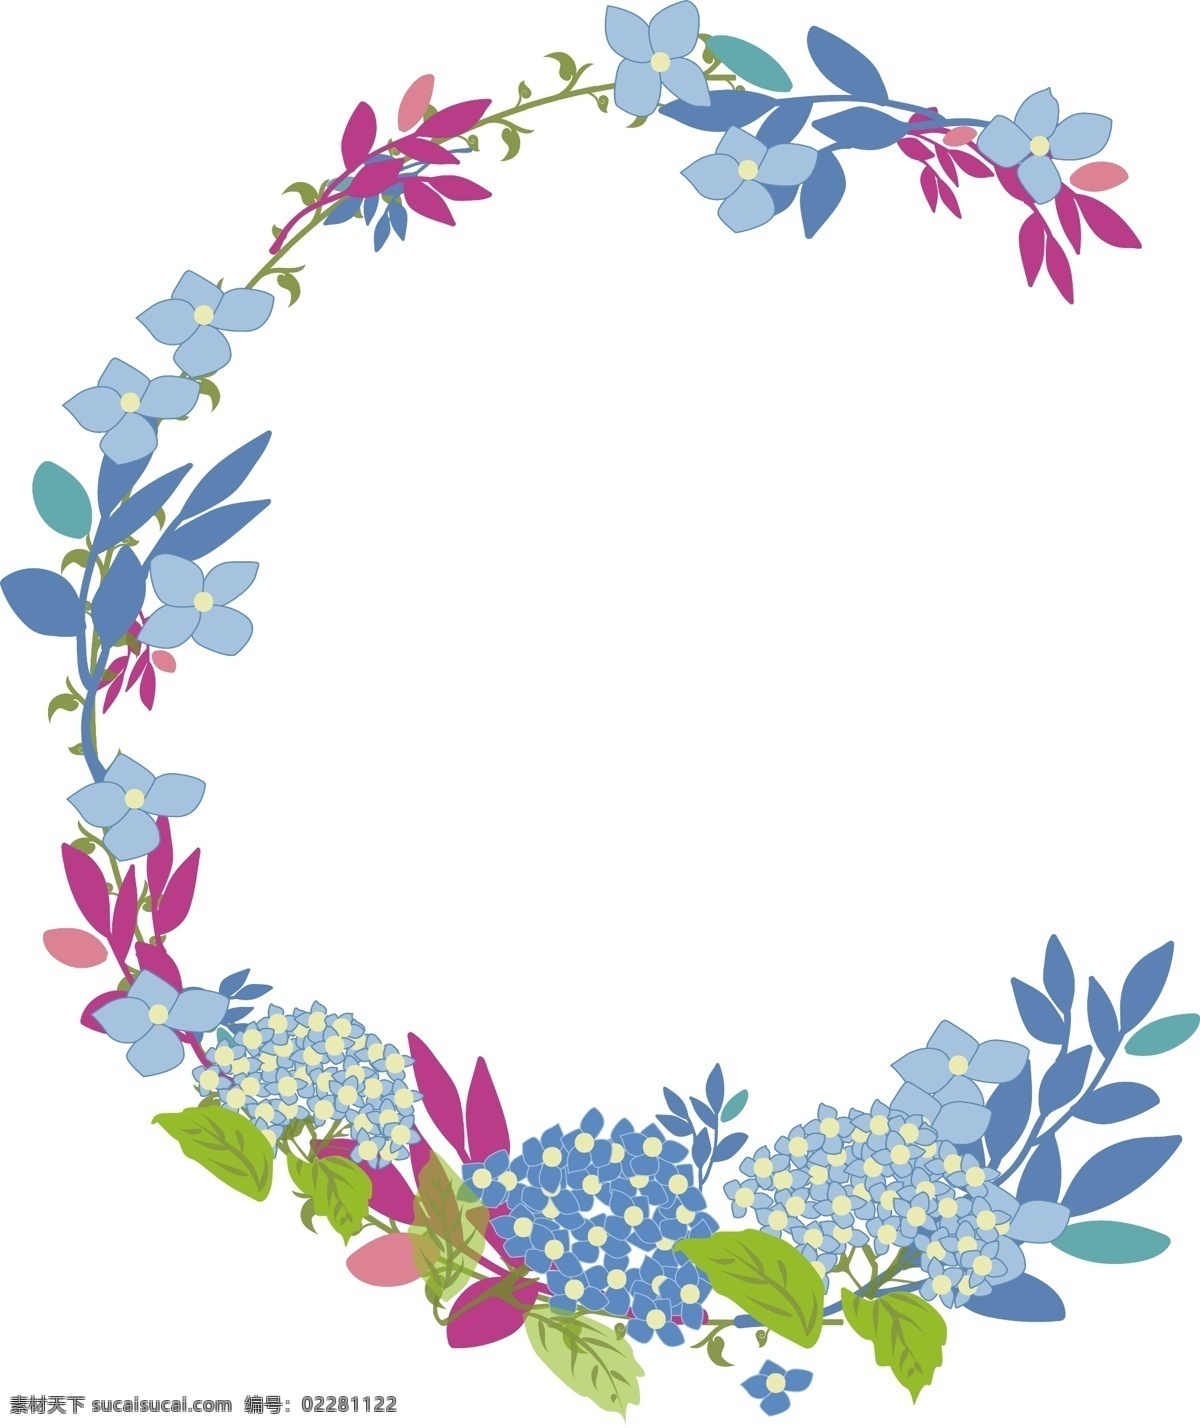 手绘 矢量 半圆形 花环 卡通 蓝色 绿色 粉色 树叶 花朵 藤条 枝条 美丽 清晰 可爱